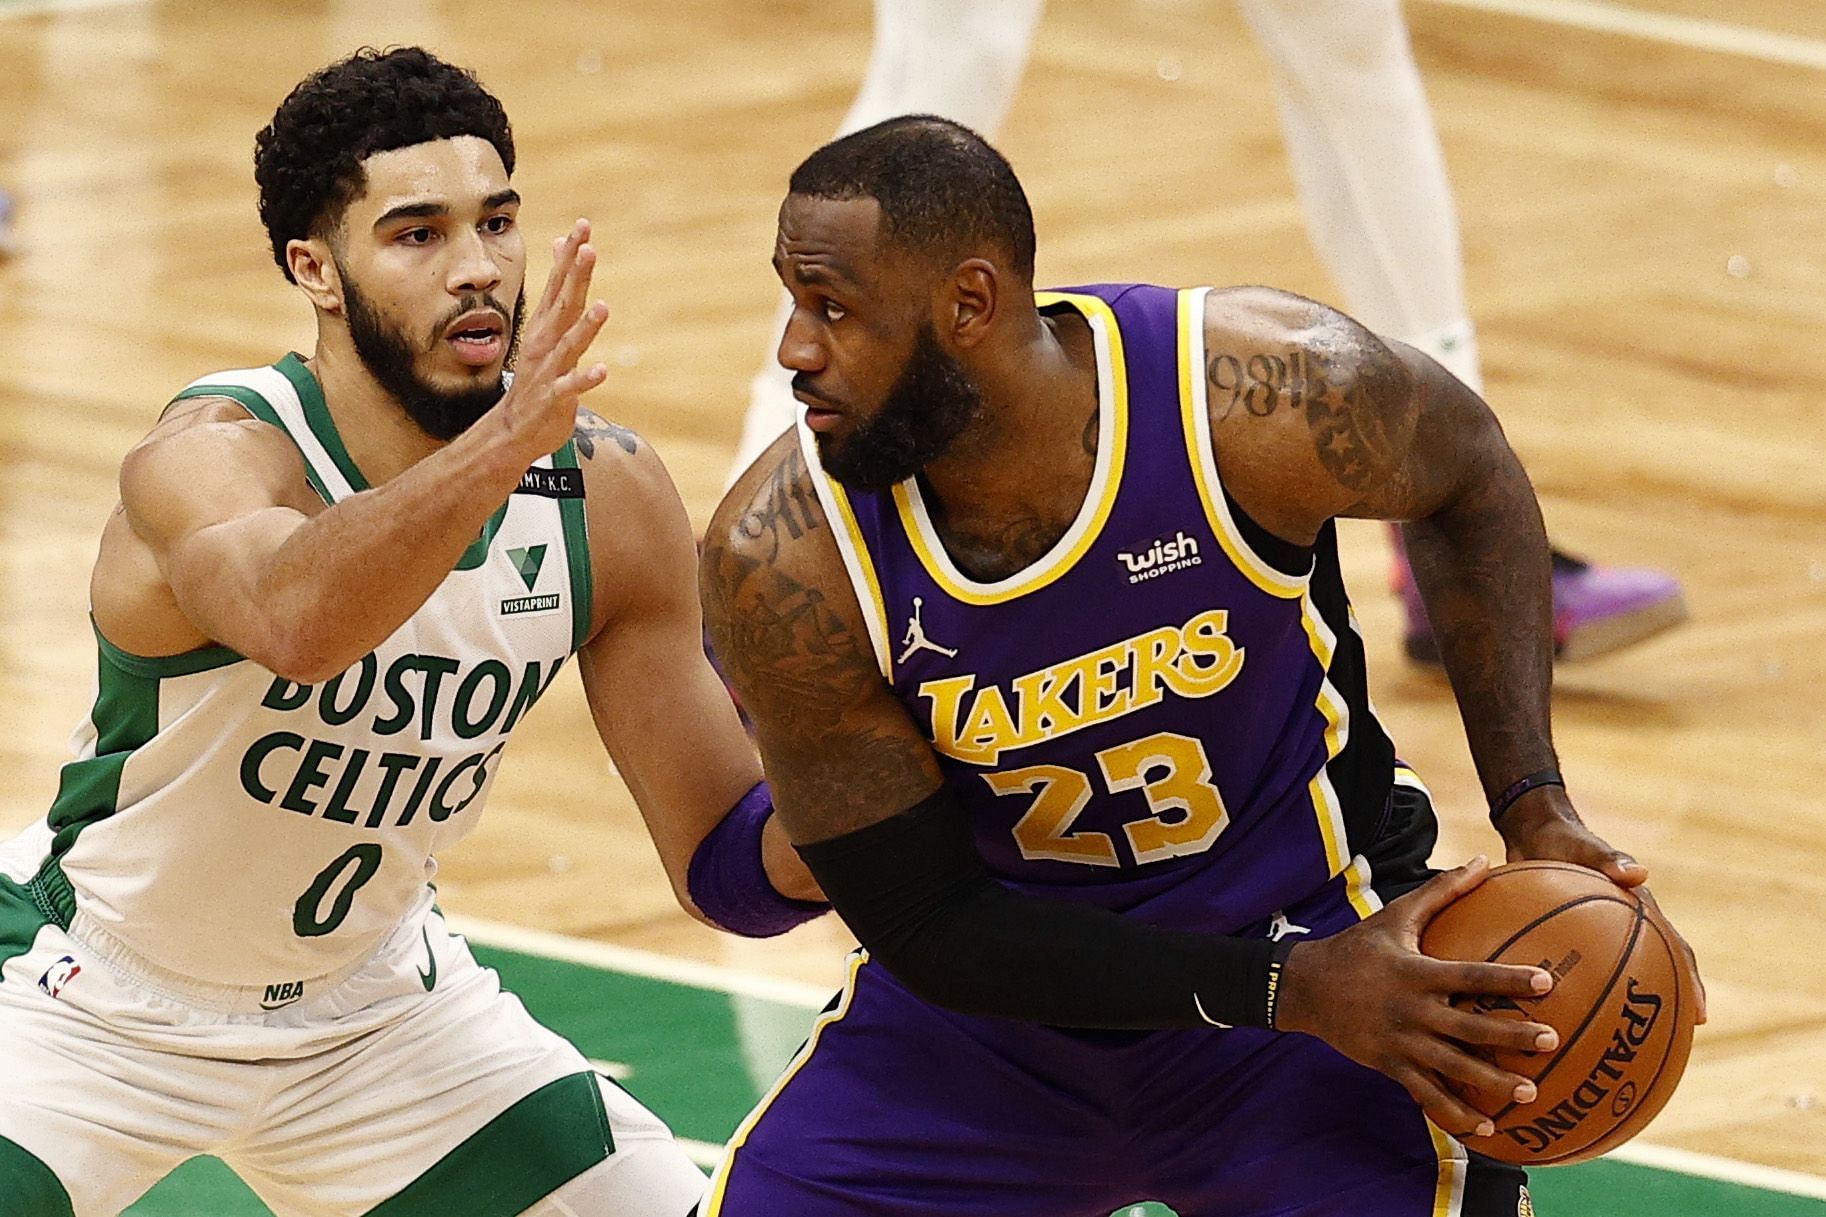 Jayson Tatum of the Boston Celtics defending LeBron James of the LA Lakers